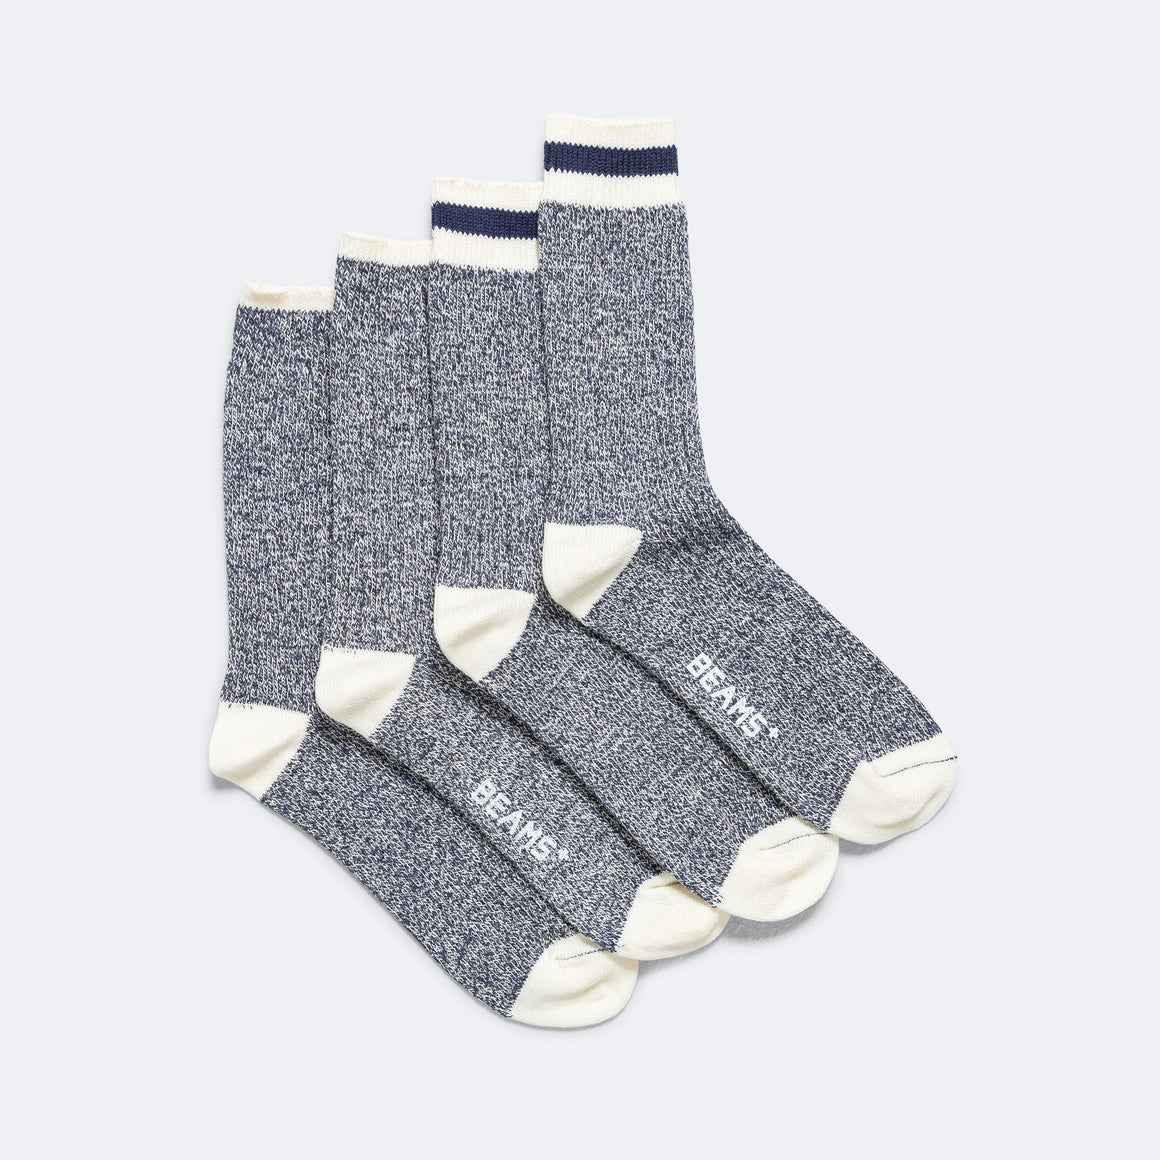 Rag Socks - New Navy/Navy